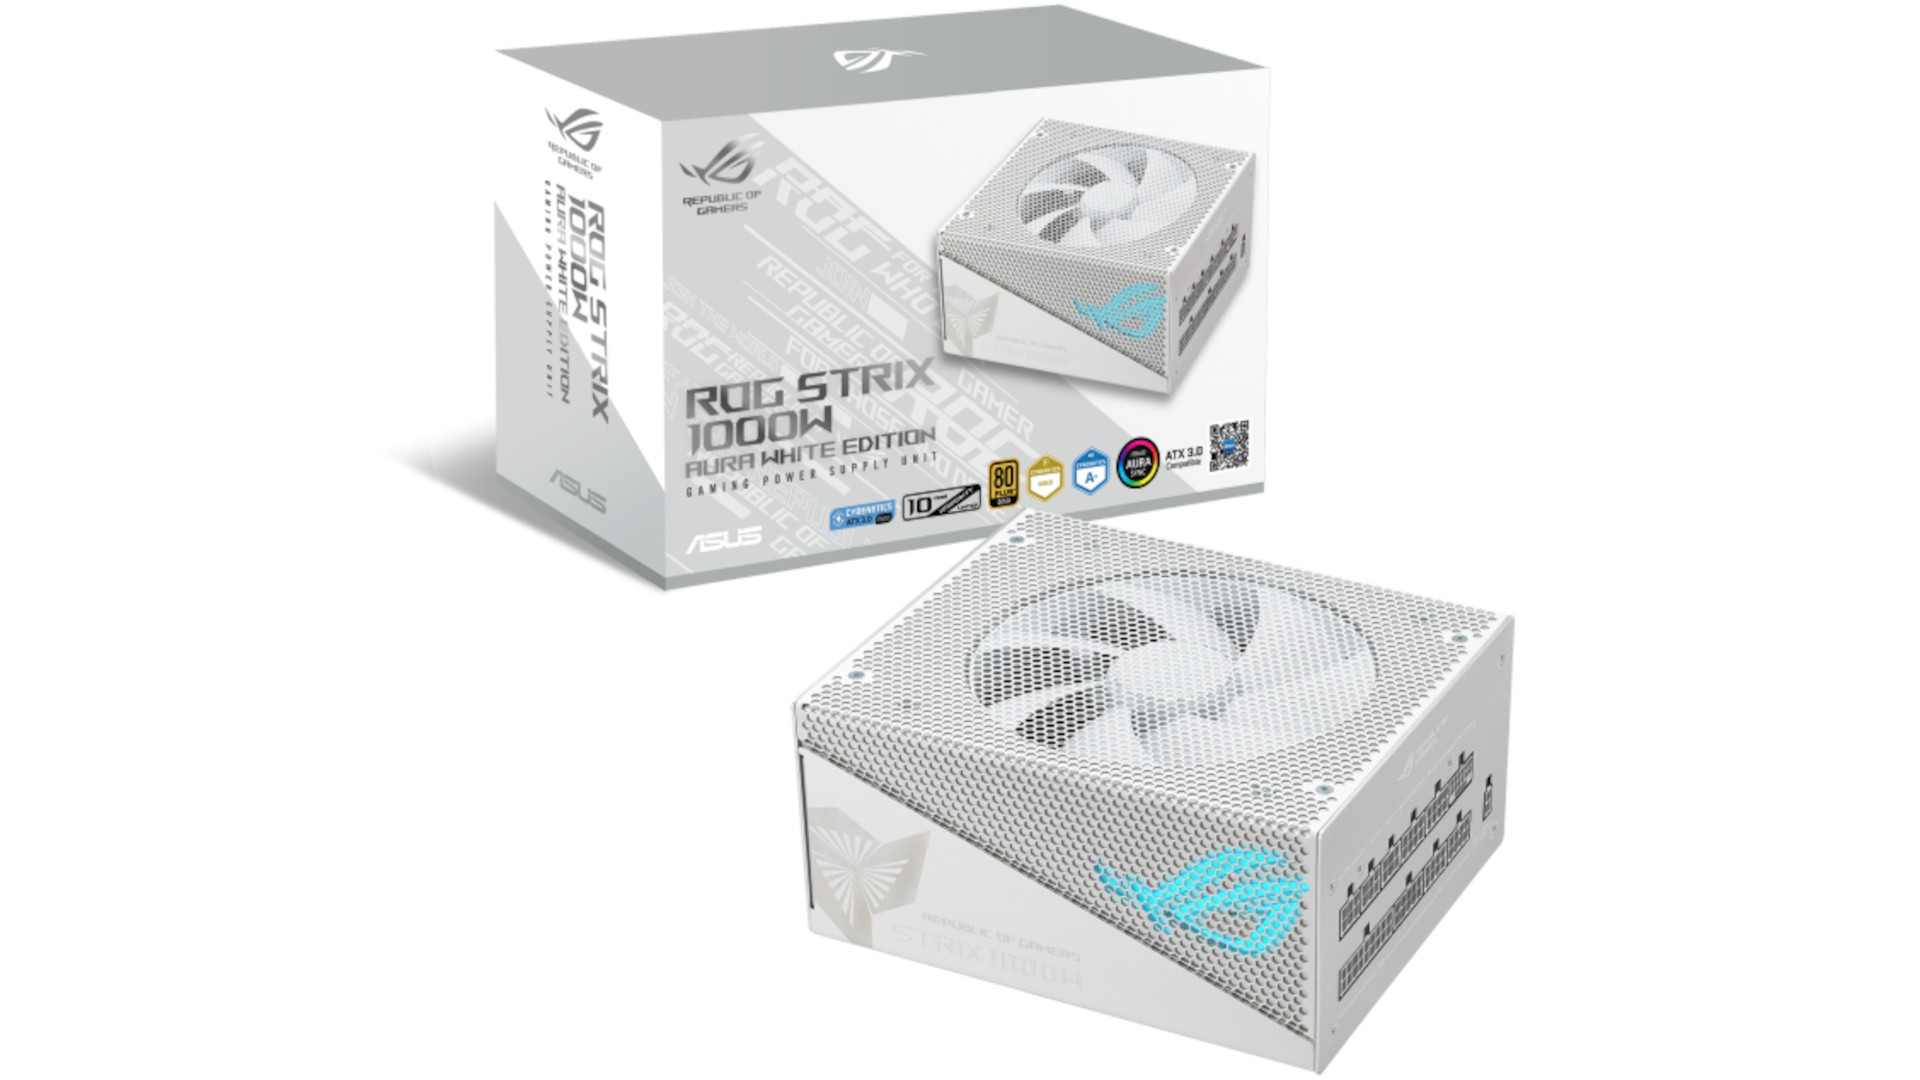 ROG STRIX 1000W Gold Aura White Edition Power Supply 5